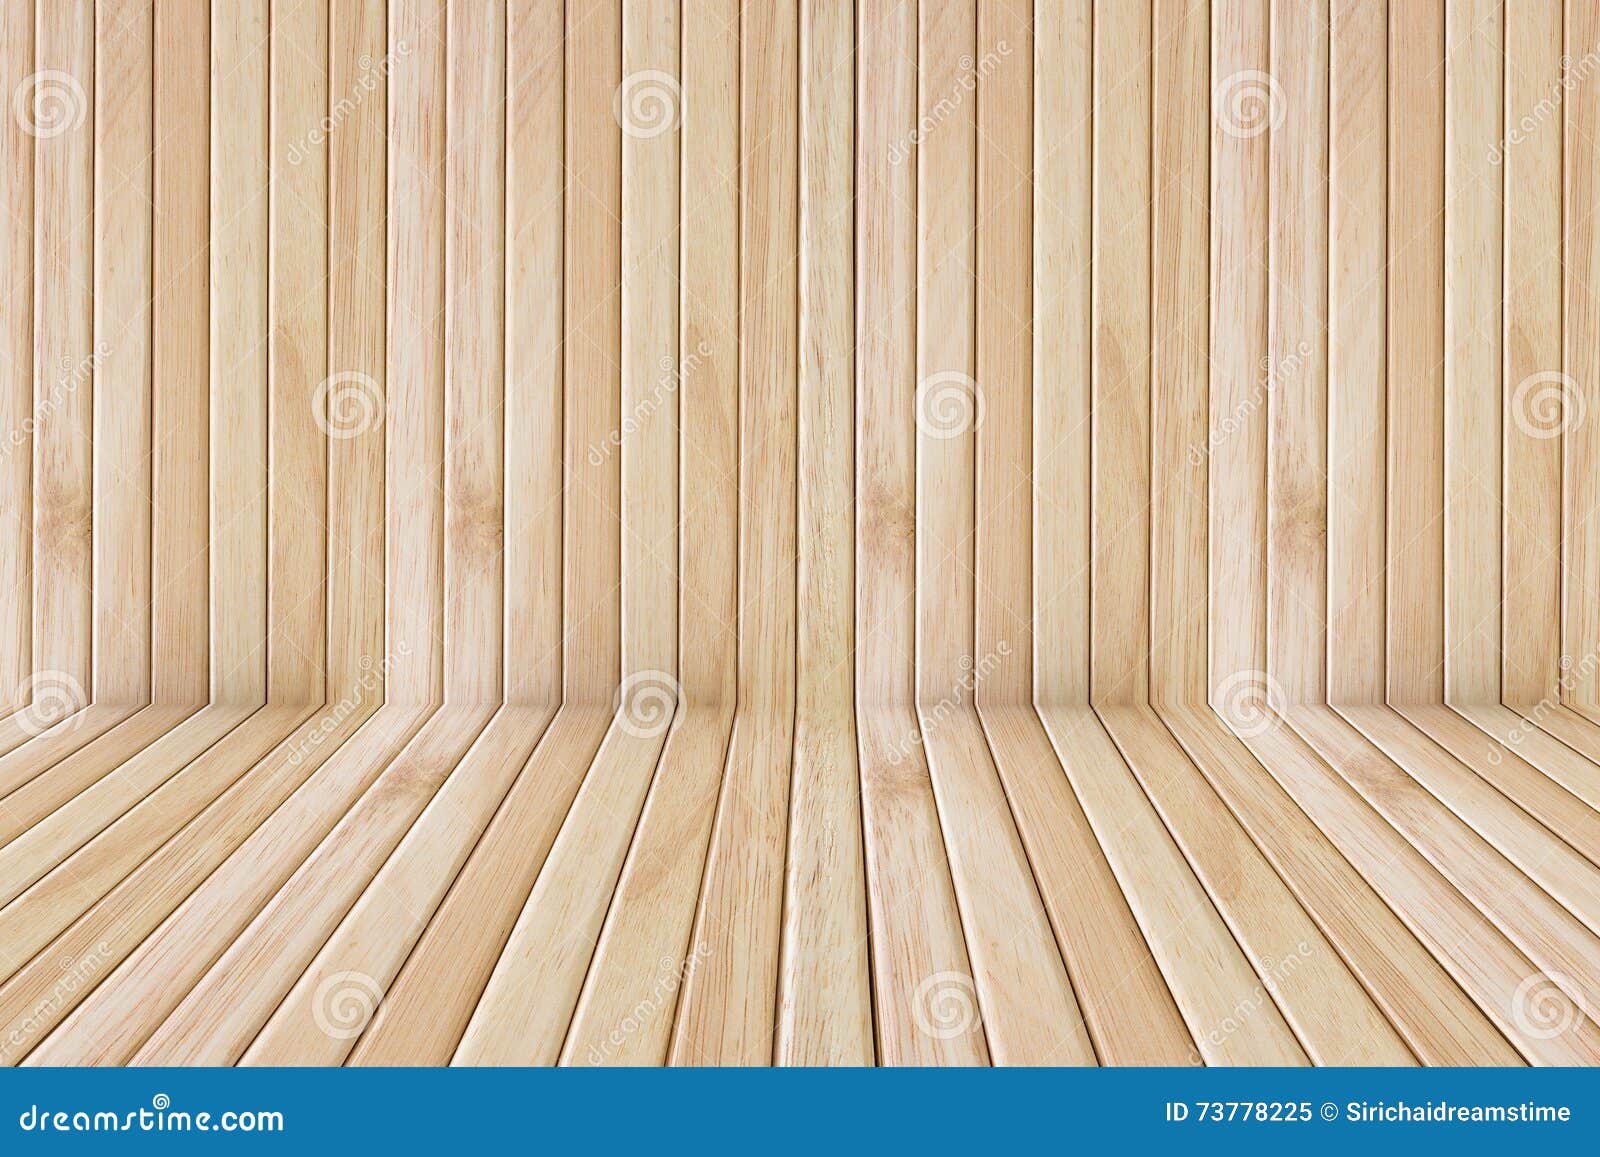 Sàn gỗ sân khấu, không chỉ là tạo cảm giác mềm mại, dễ chịu cho diễn viên khi biểu diễn mà còn mang đến vẻ đẹp sang trọng, ấn tượng của một sân khấu chuyên nghiệp. Các tiết mục biểu diễn càng được nâng lên khi đặt trên những tấm sàn gỗ ấy. Hãy xem những hình ảnh sàn gỗ sân khấu đẹp tựa tranh vẽ này nhé!